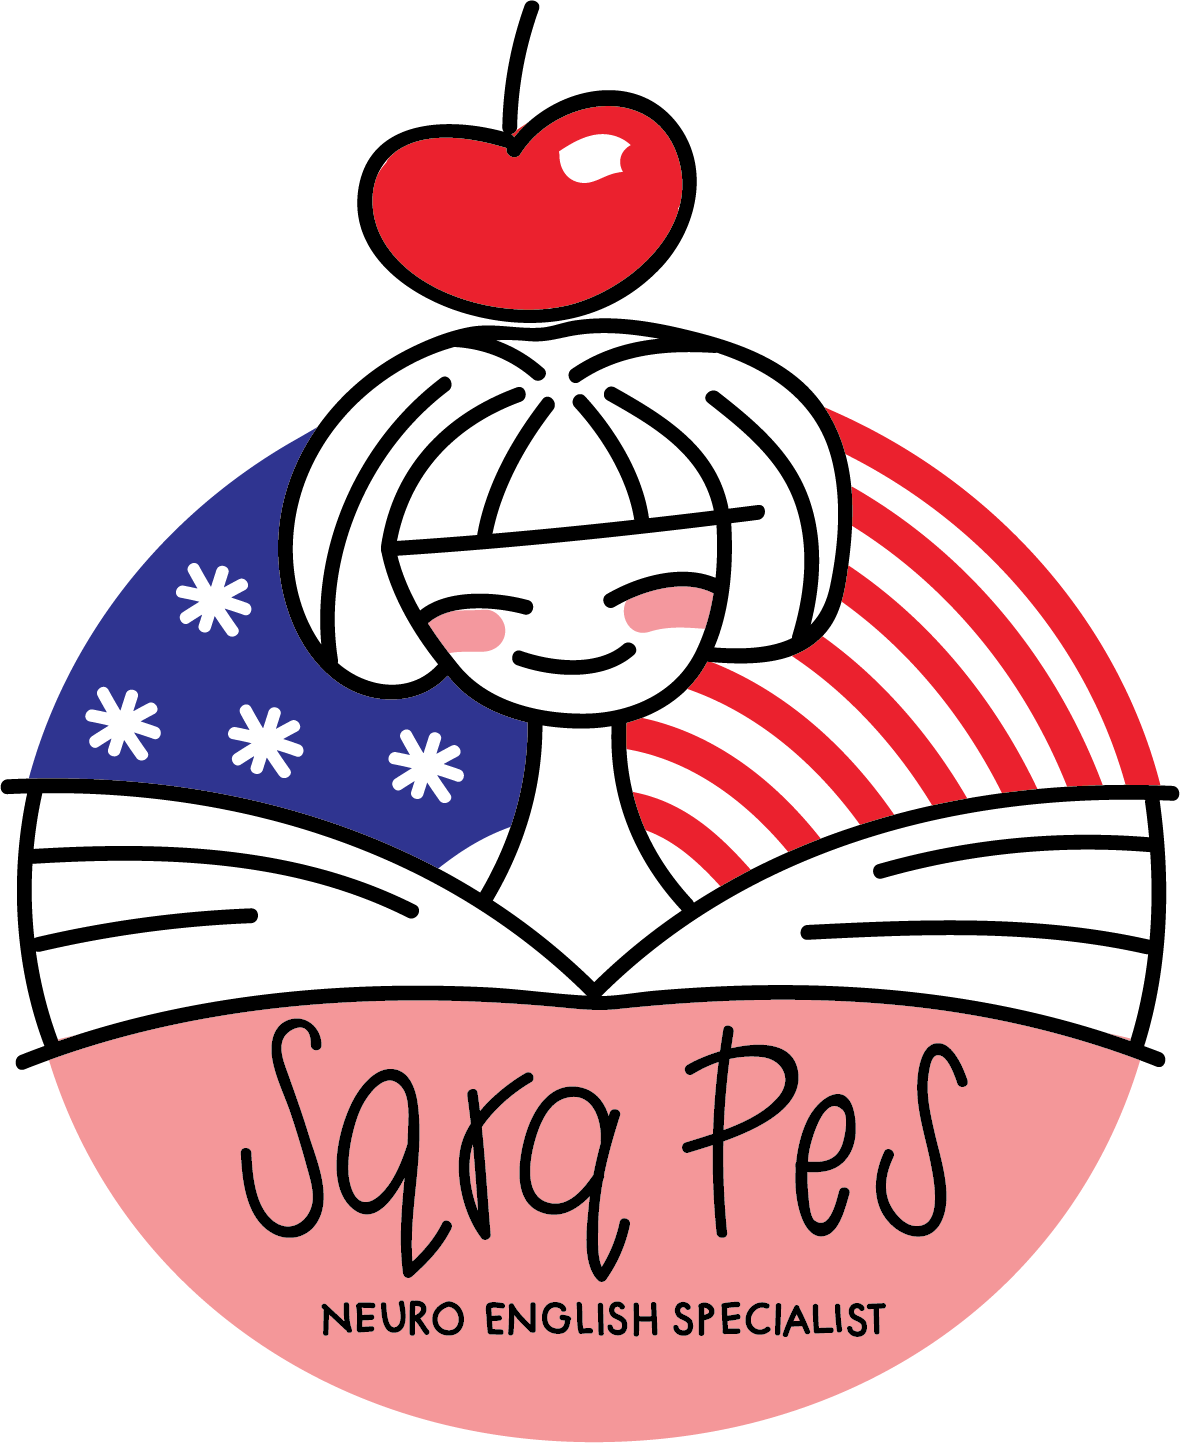 Sara Pes | Does English